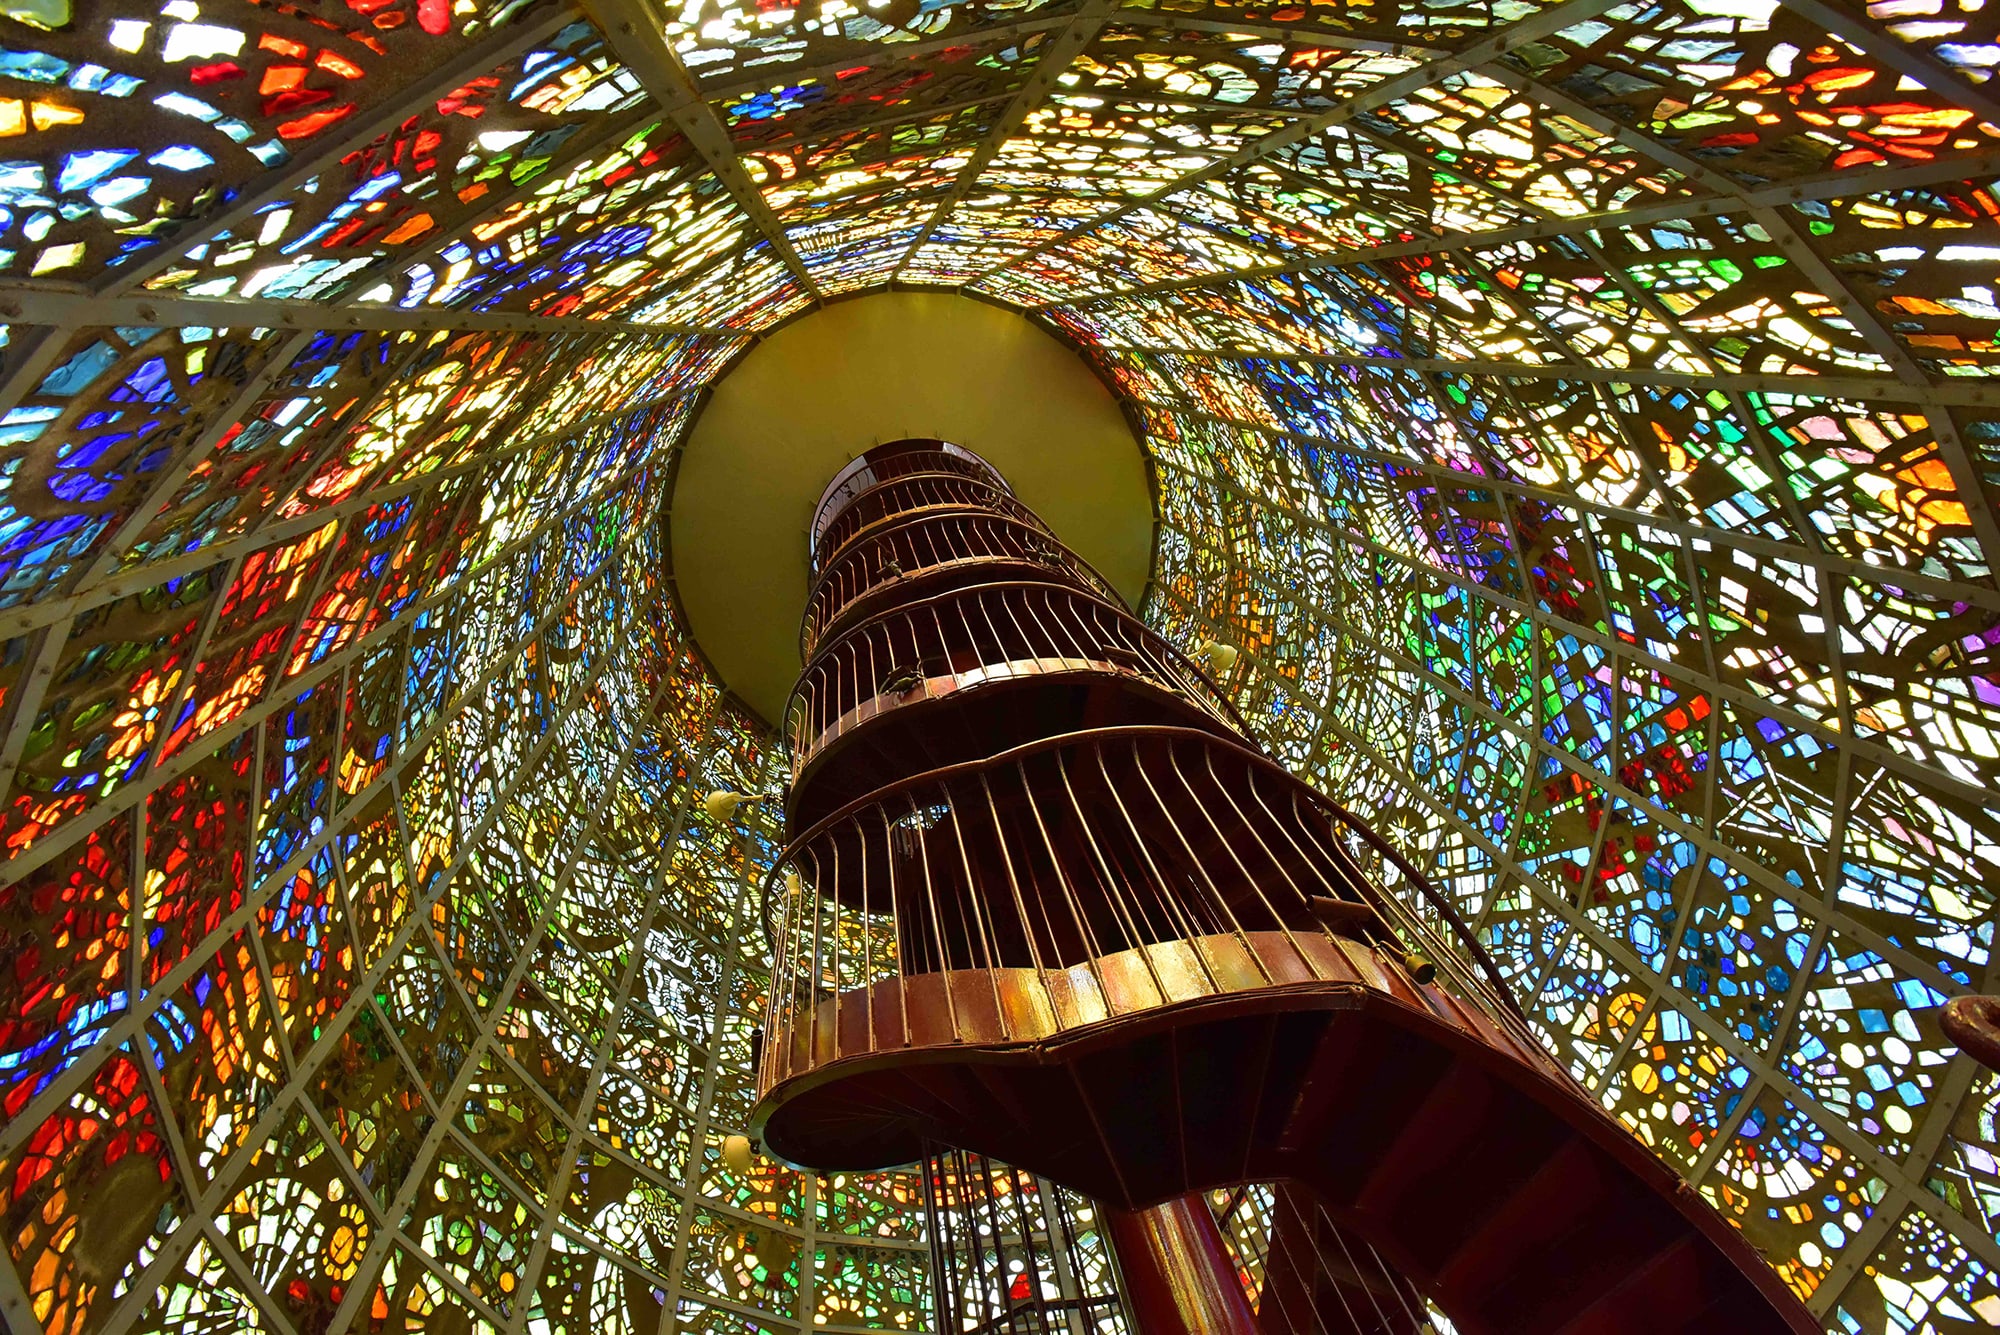 ステンドグラスの塔《幸せをよぶシンフォニー彫刻》はライトアップによってさらに美しい姿を見せる。